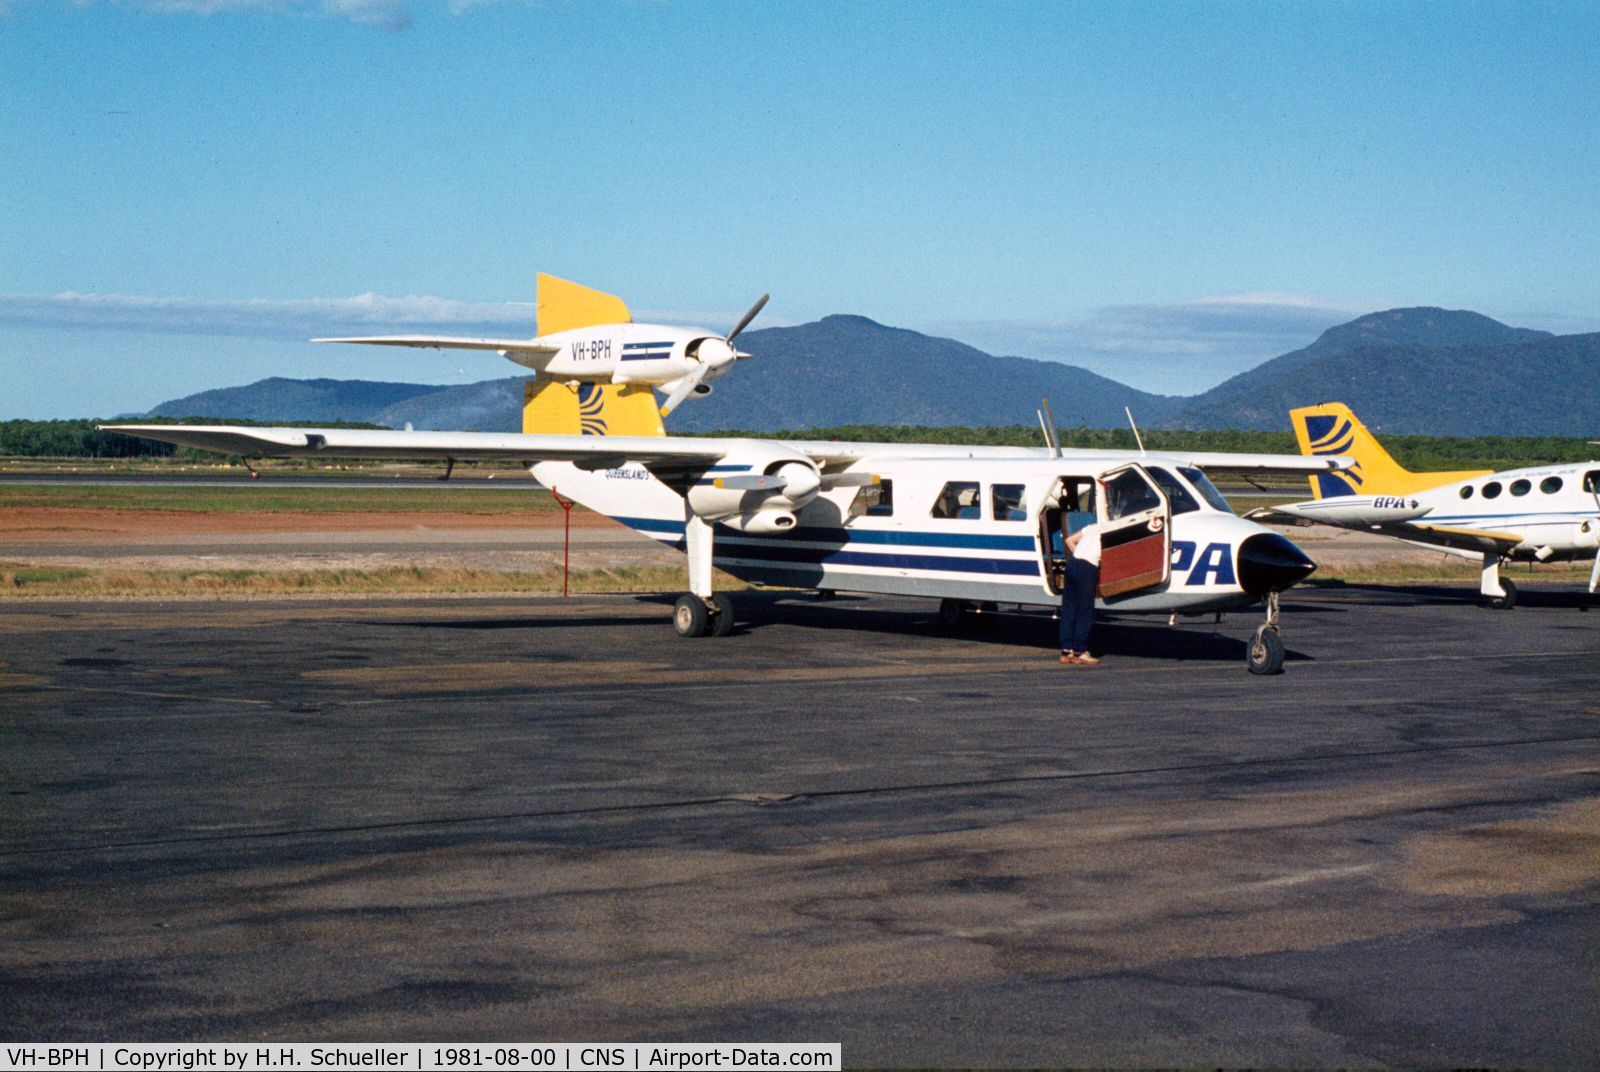 VH-BPH, 1975 Britten-Norman BN-2A Mk.III-1 Trislander C/N 1003, Photo taken at Cairns Airport in 1981. Bush Pilot Airways was operating round trips in the Cairns region.